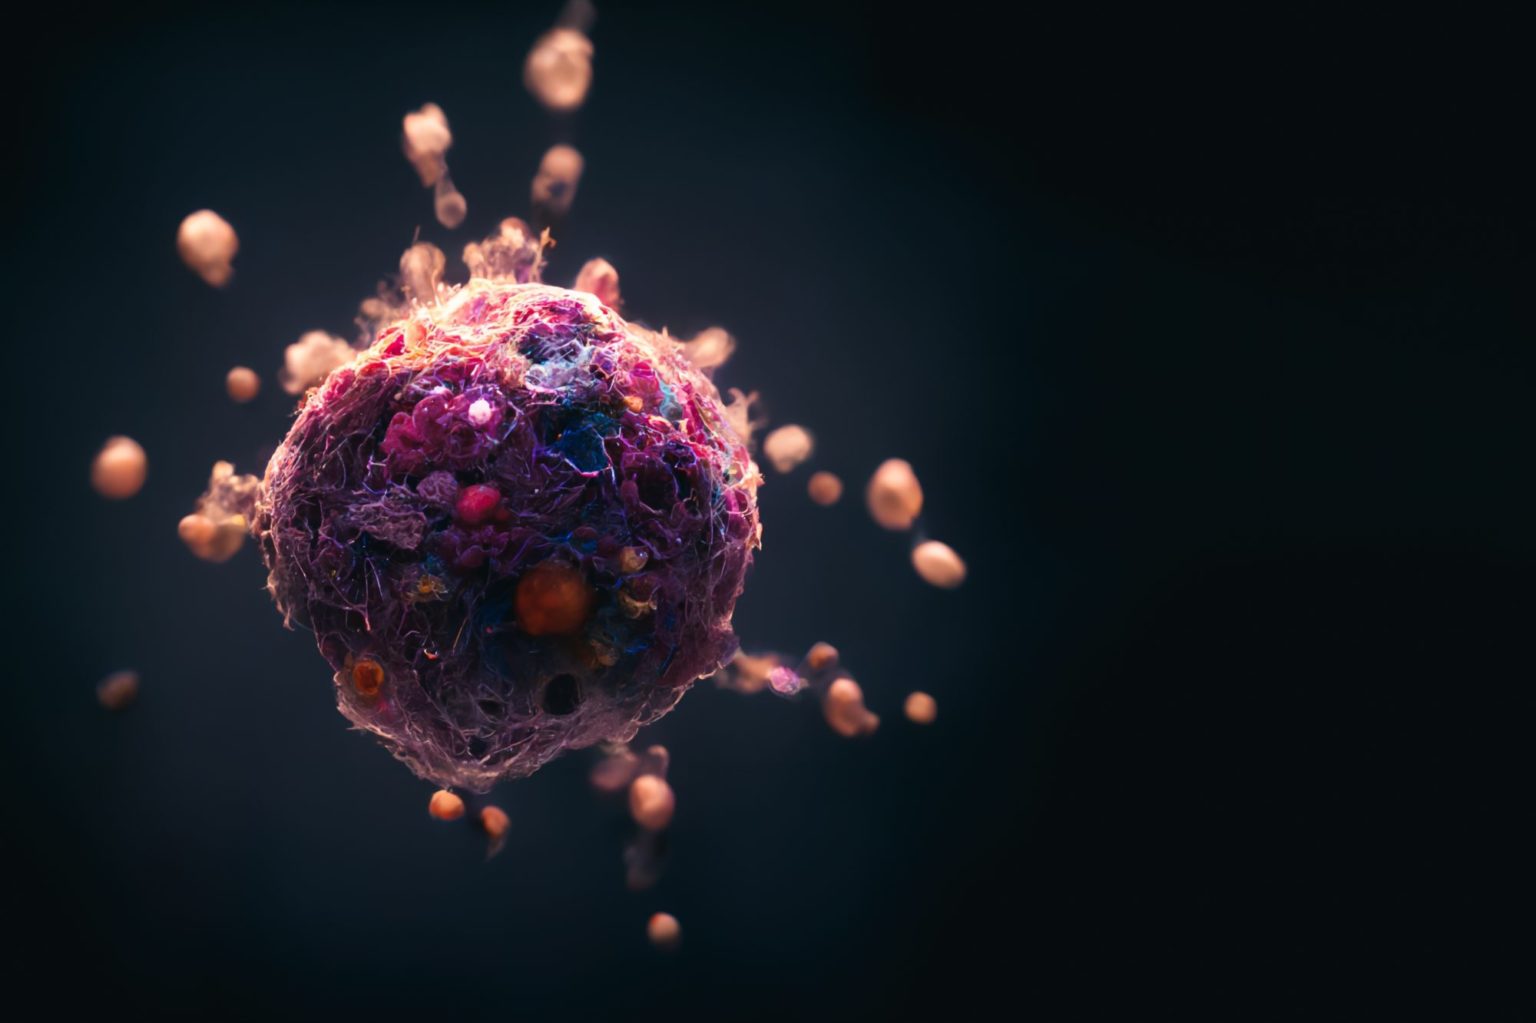 Kreftsvulst som angripes av nenokapsler. Illustrasjonsfoto: Shutterstock